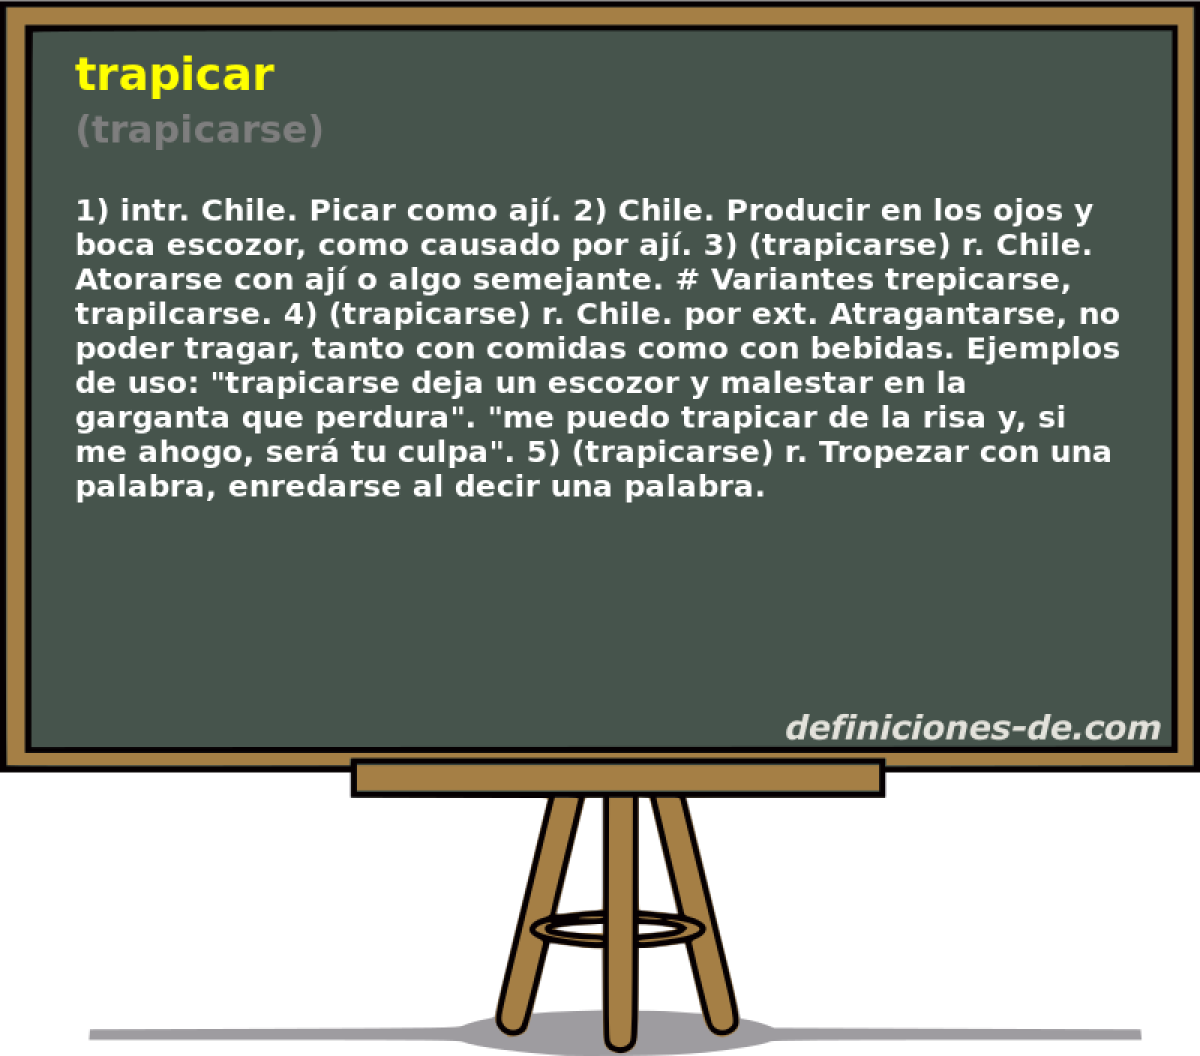 trapicar (trapicarse)